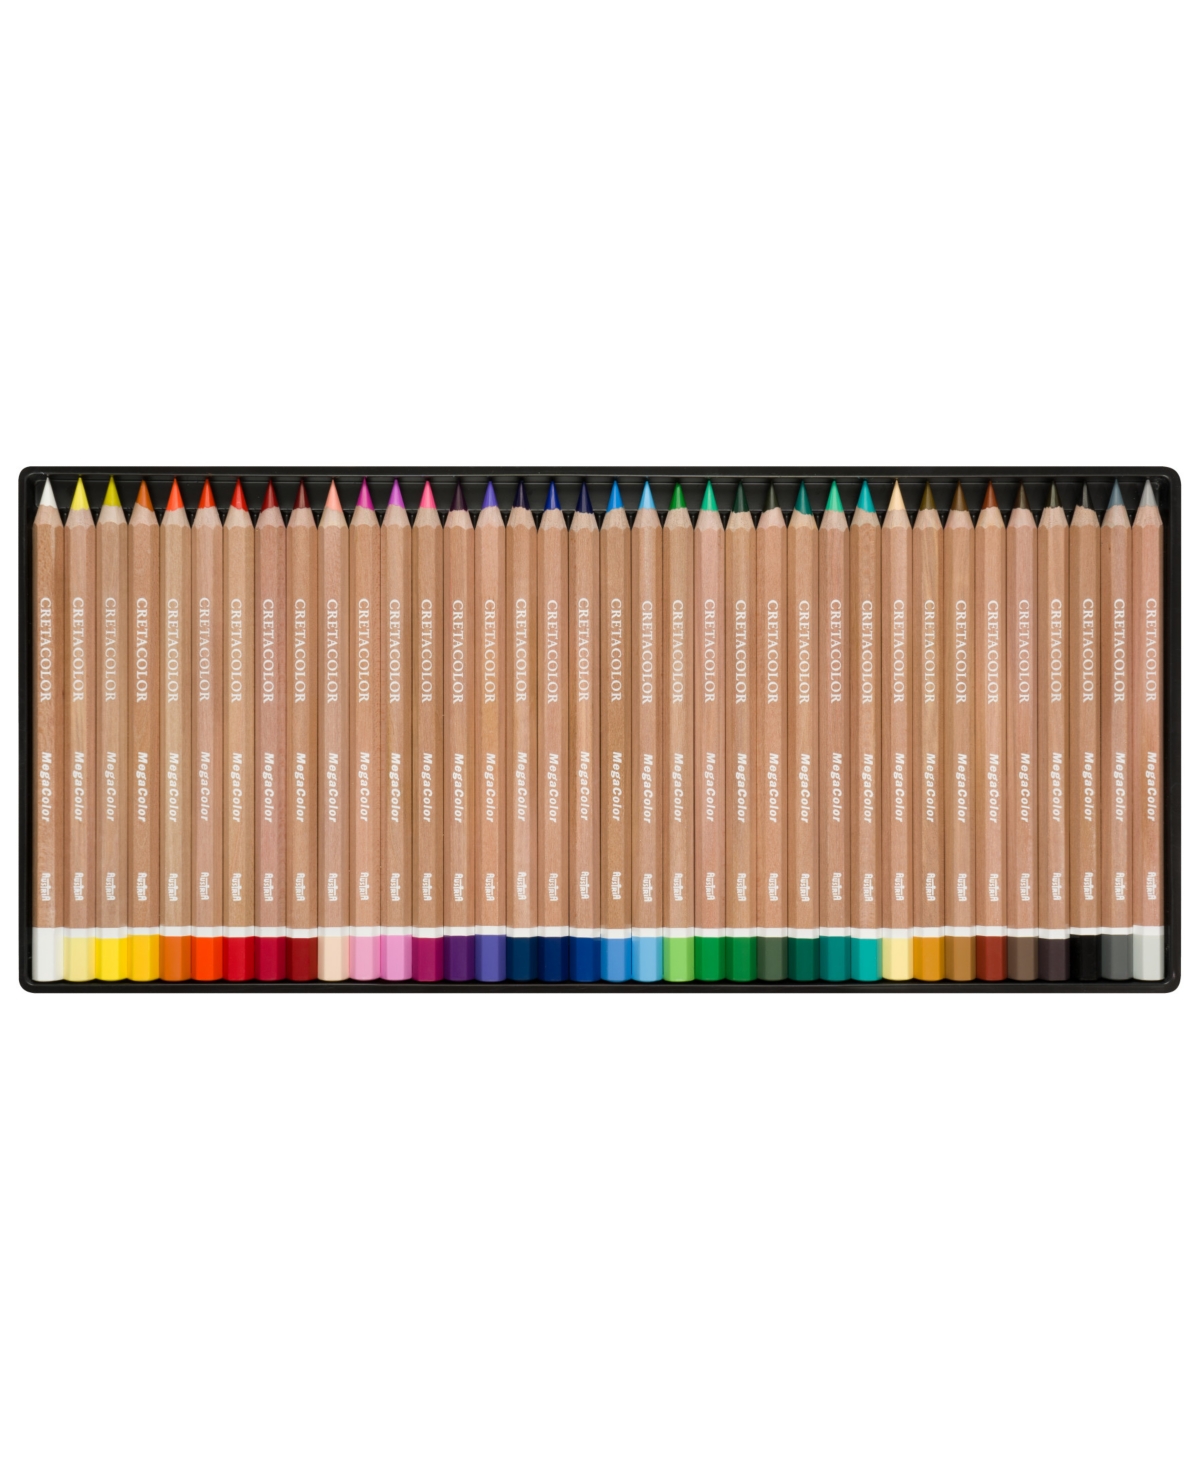 Megacolor Pencil Set, Megacolor Tin Set of 36 Assorted Colors